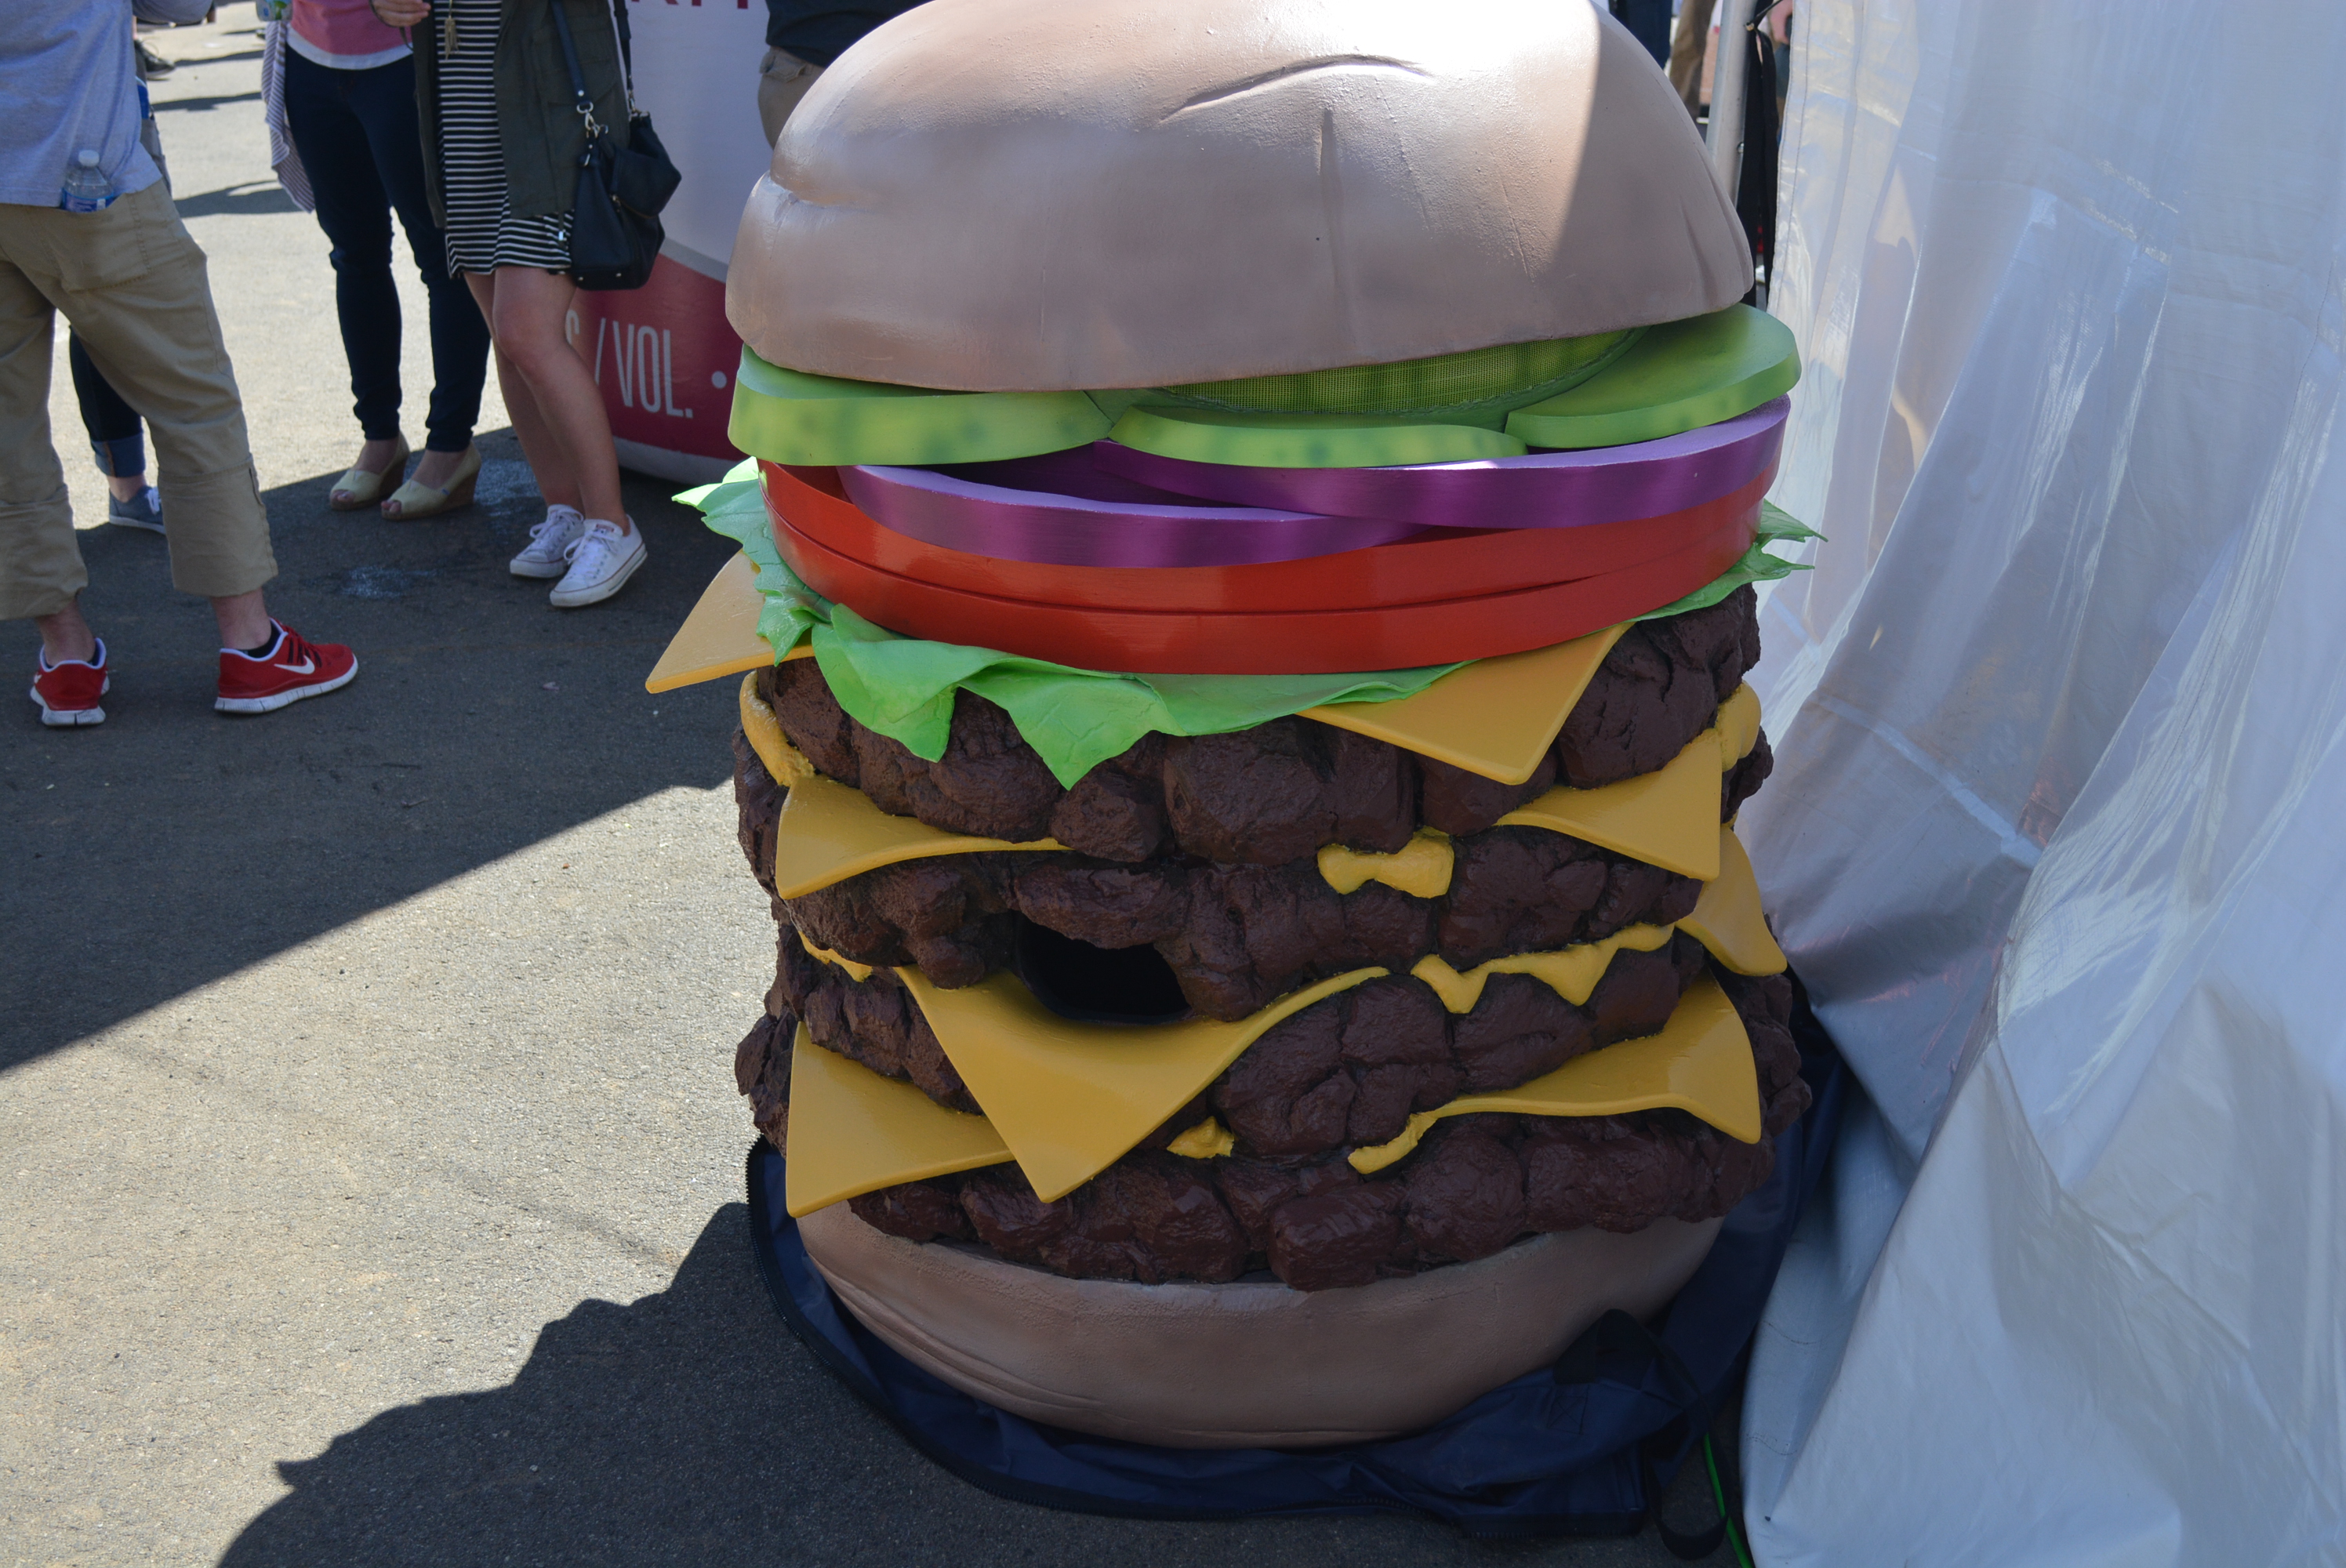 Burger mascot, disrobed